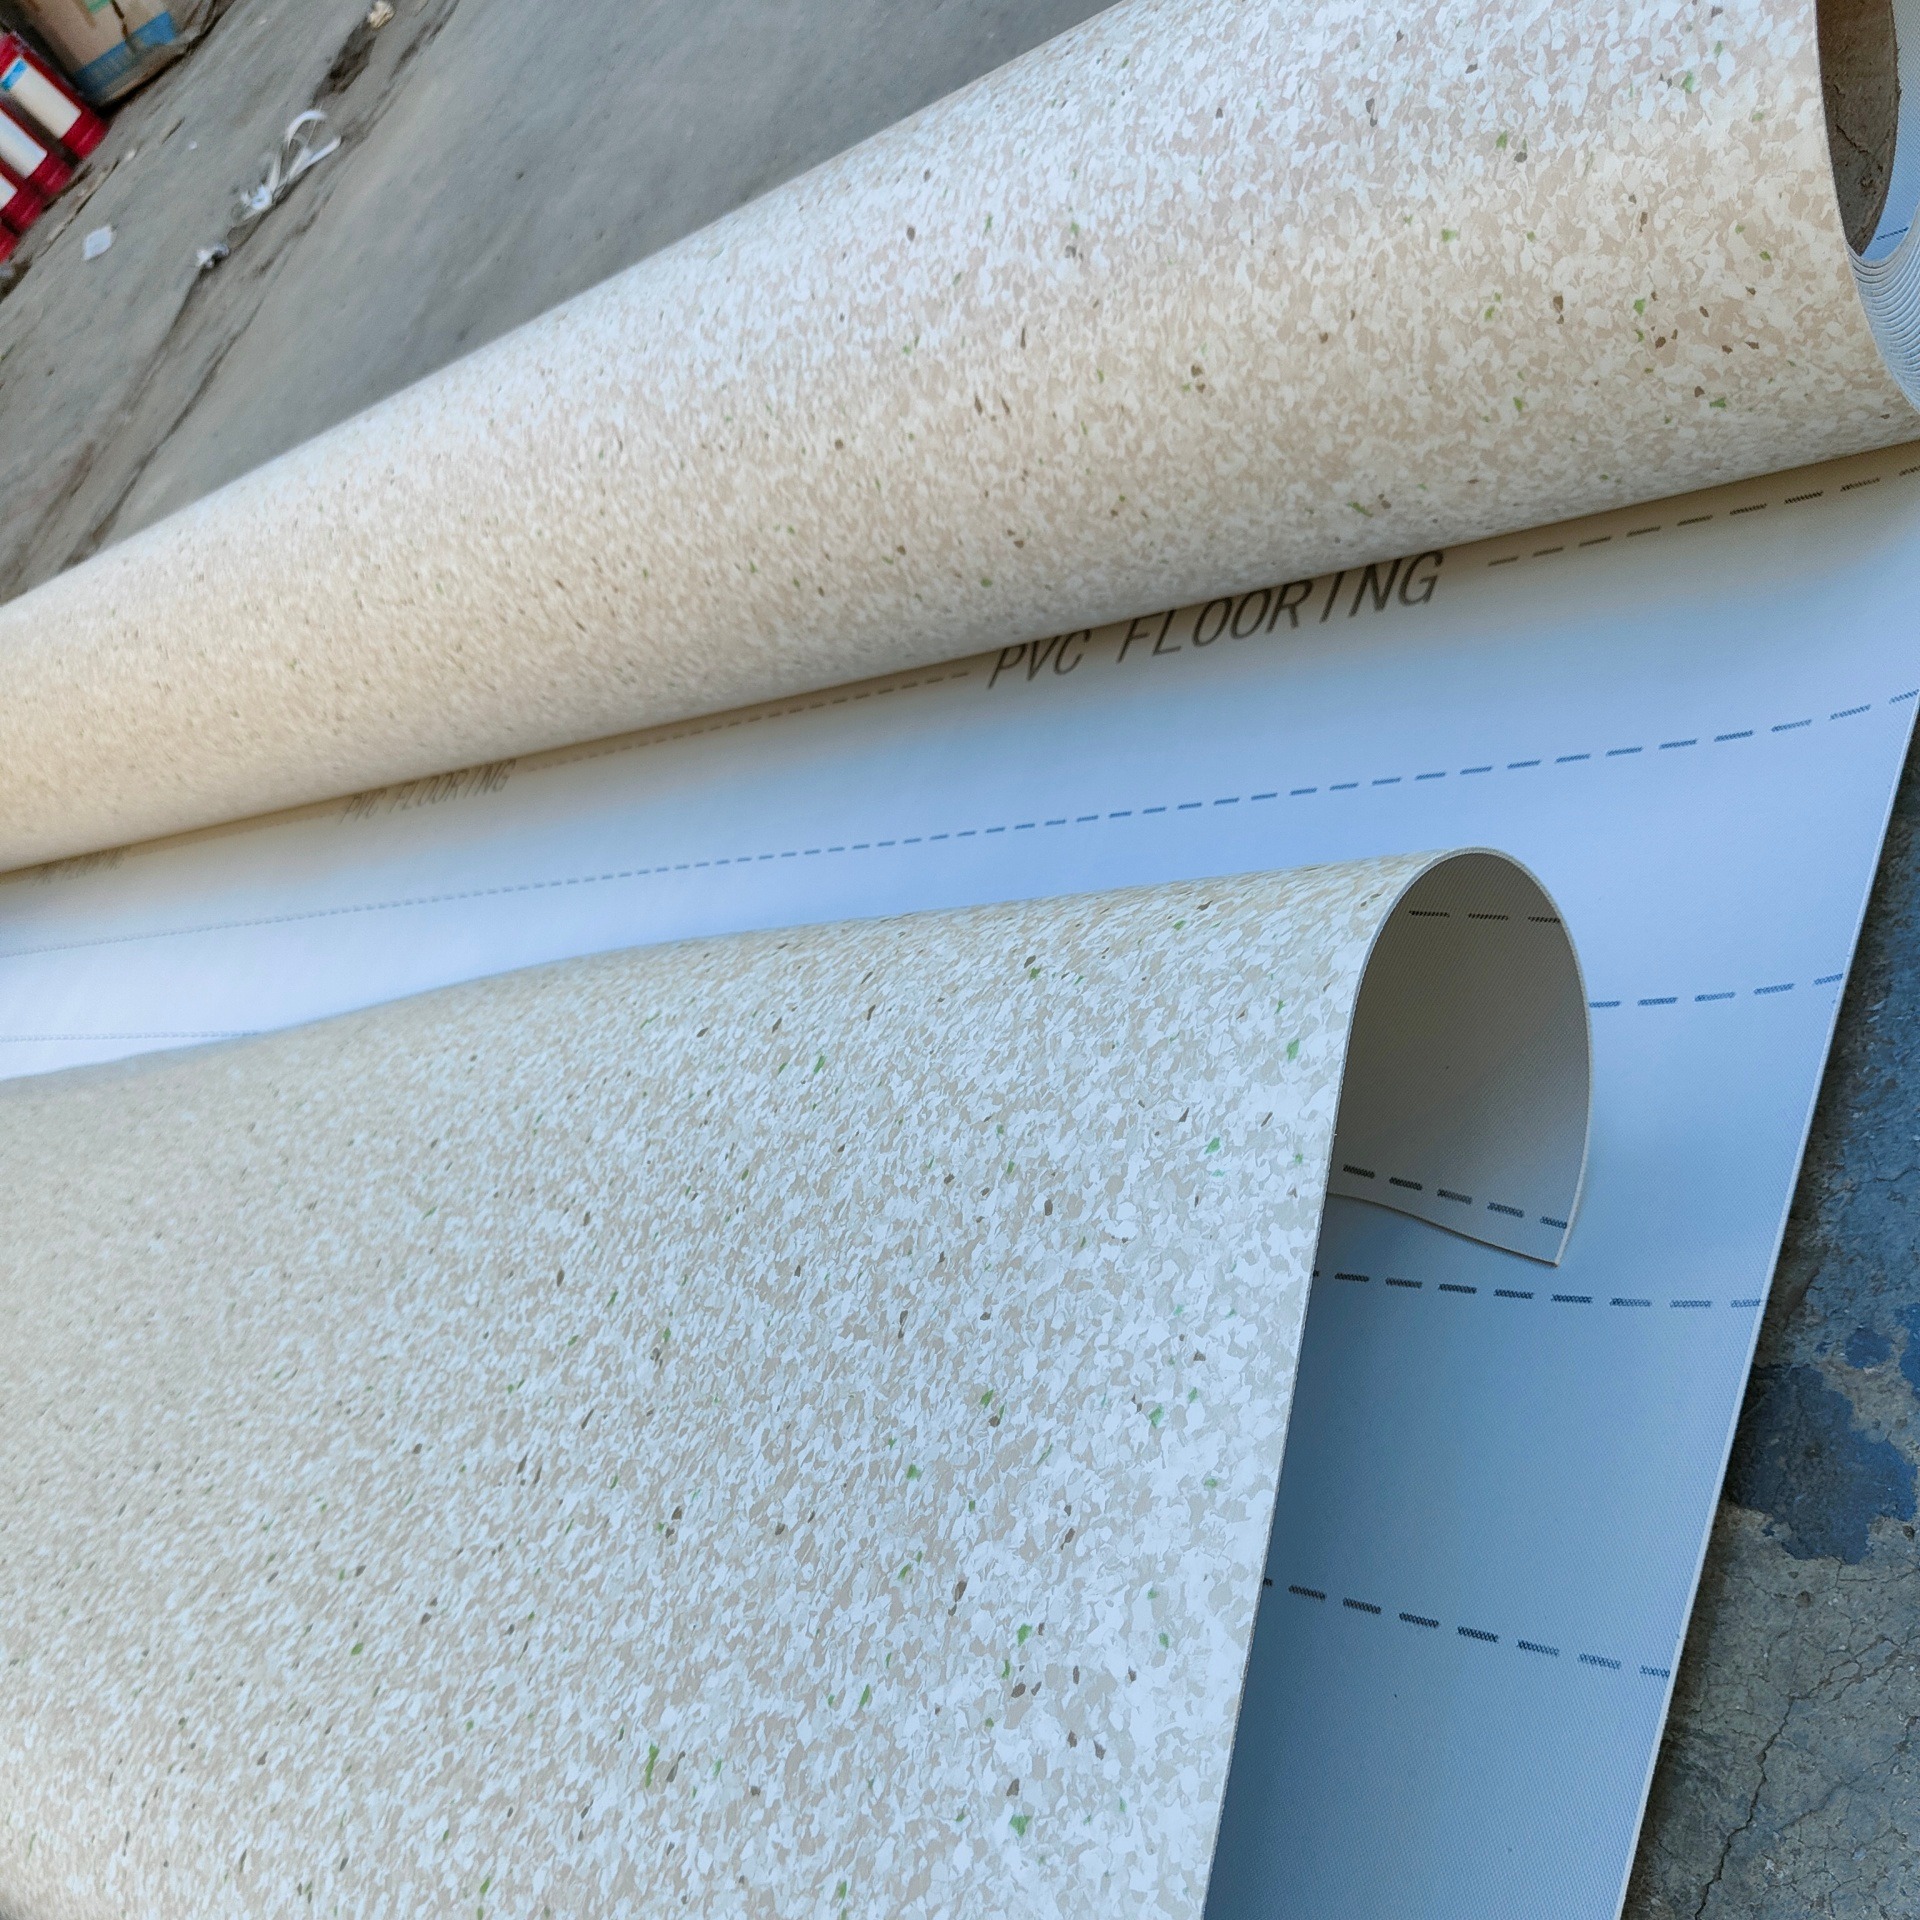 西盟绿色羽毛球场塑胶地板生产厂家 羽毛球塑胶地板的清洁 羽毛球塑胶地板的维修 羽毛球塑胶地板图片